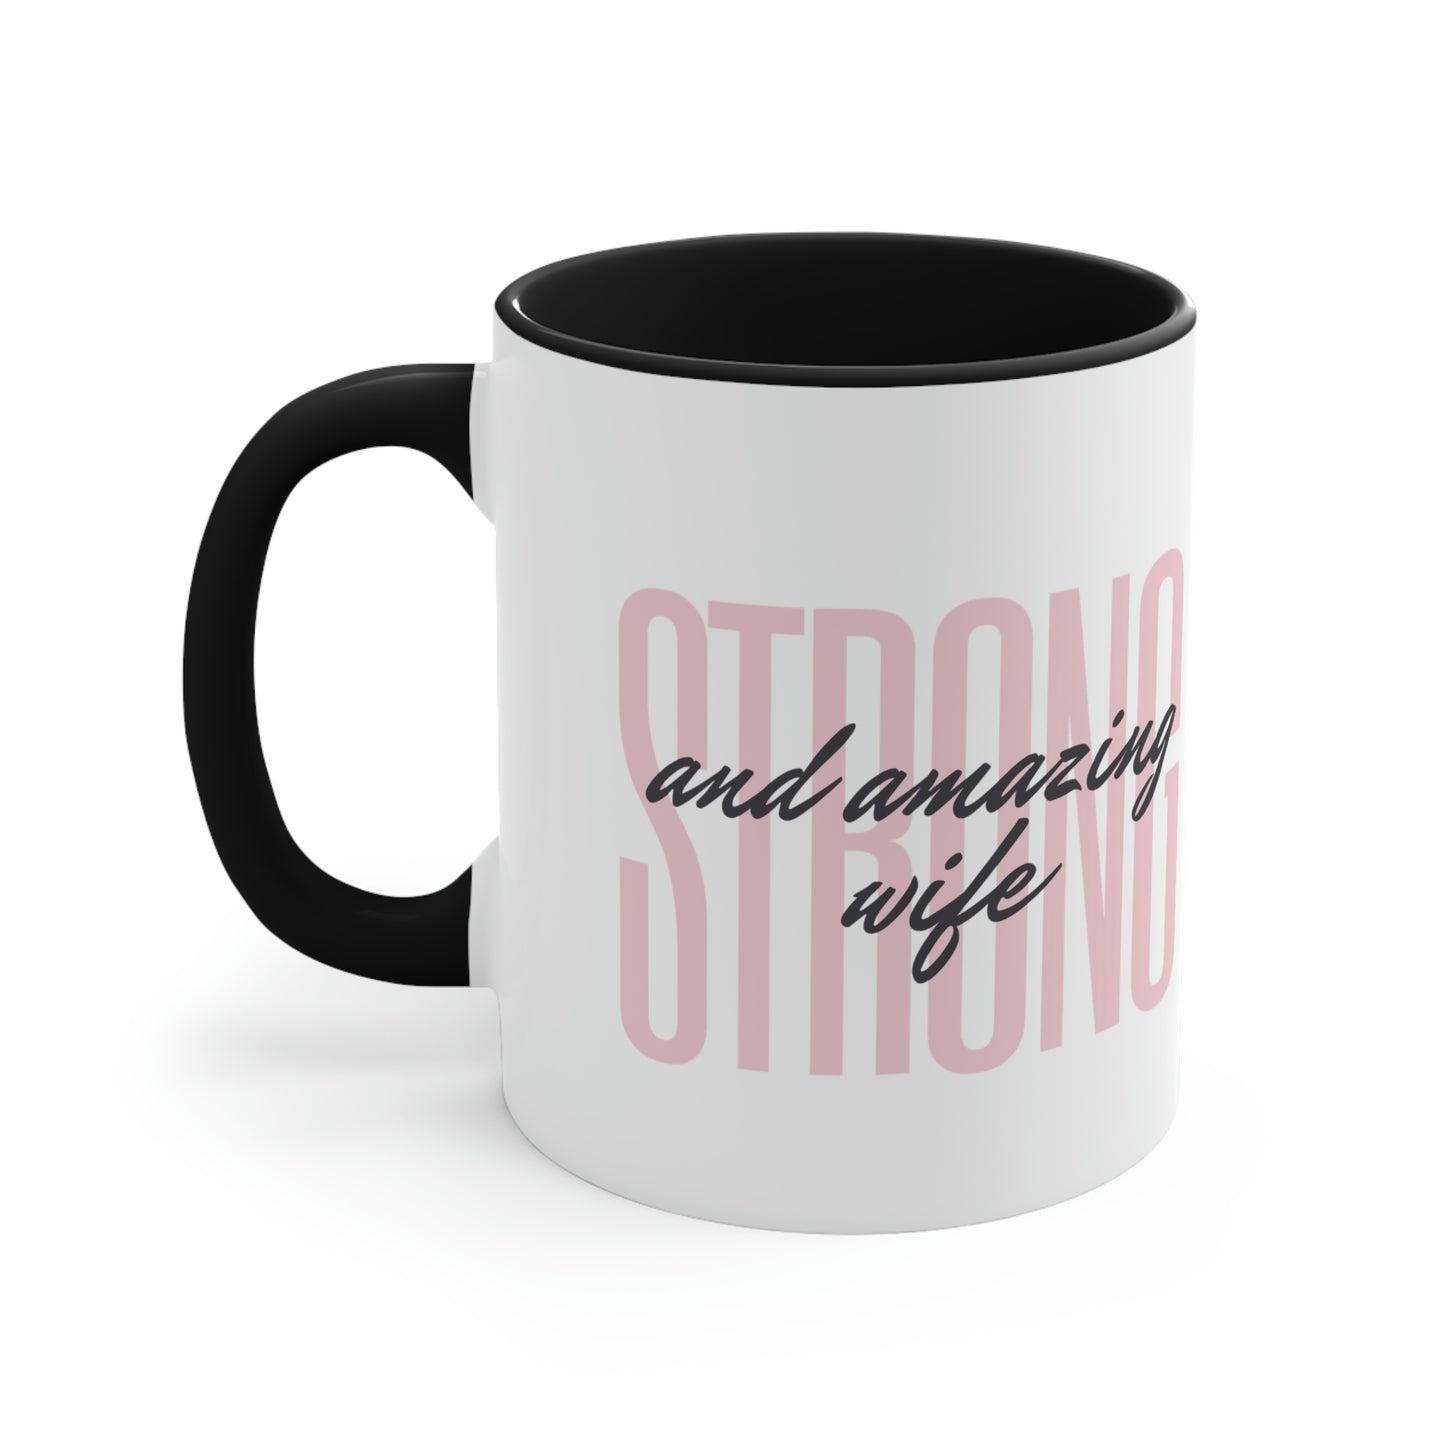 Strong Woman Mug